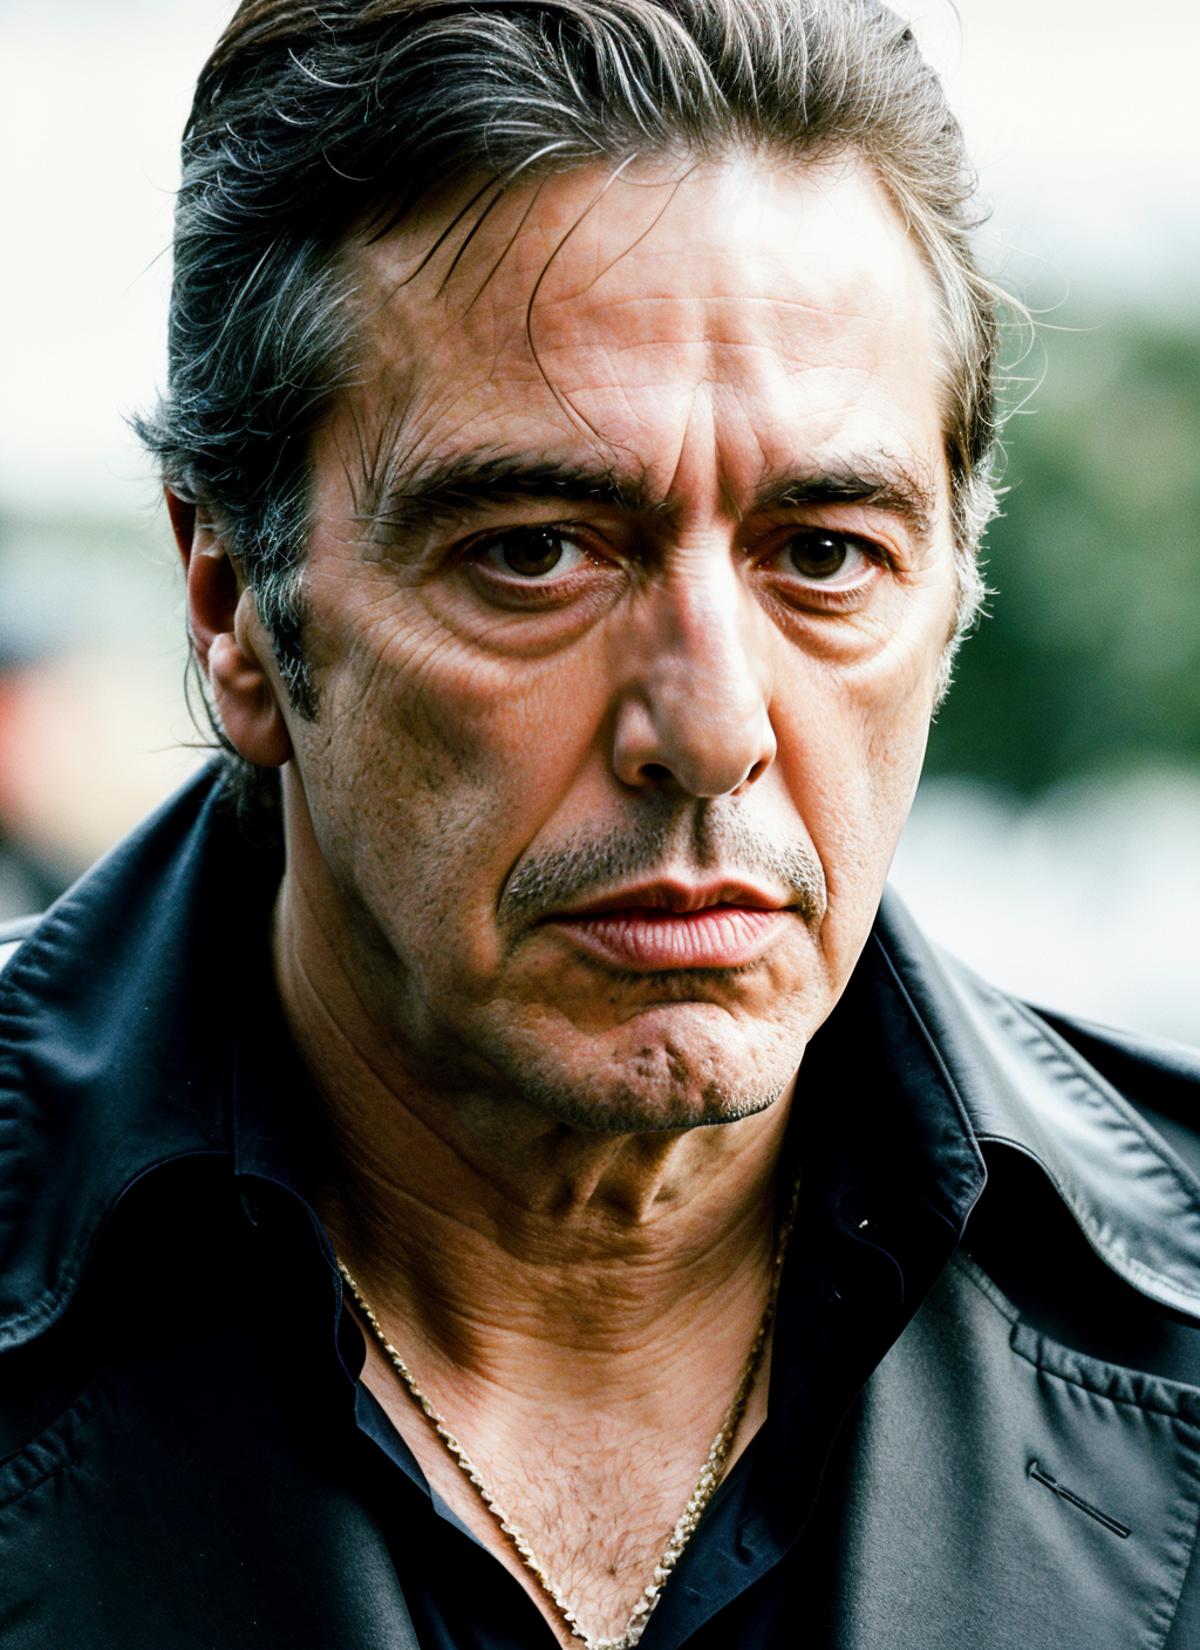 Al Pacino (1970s-2000s version) image by promocionlogolibrary476